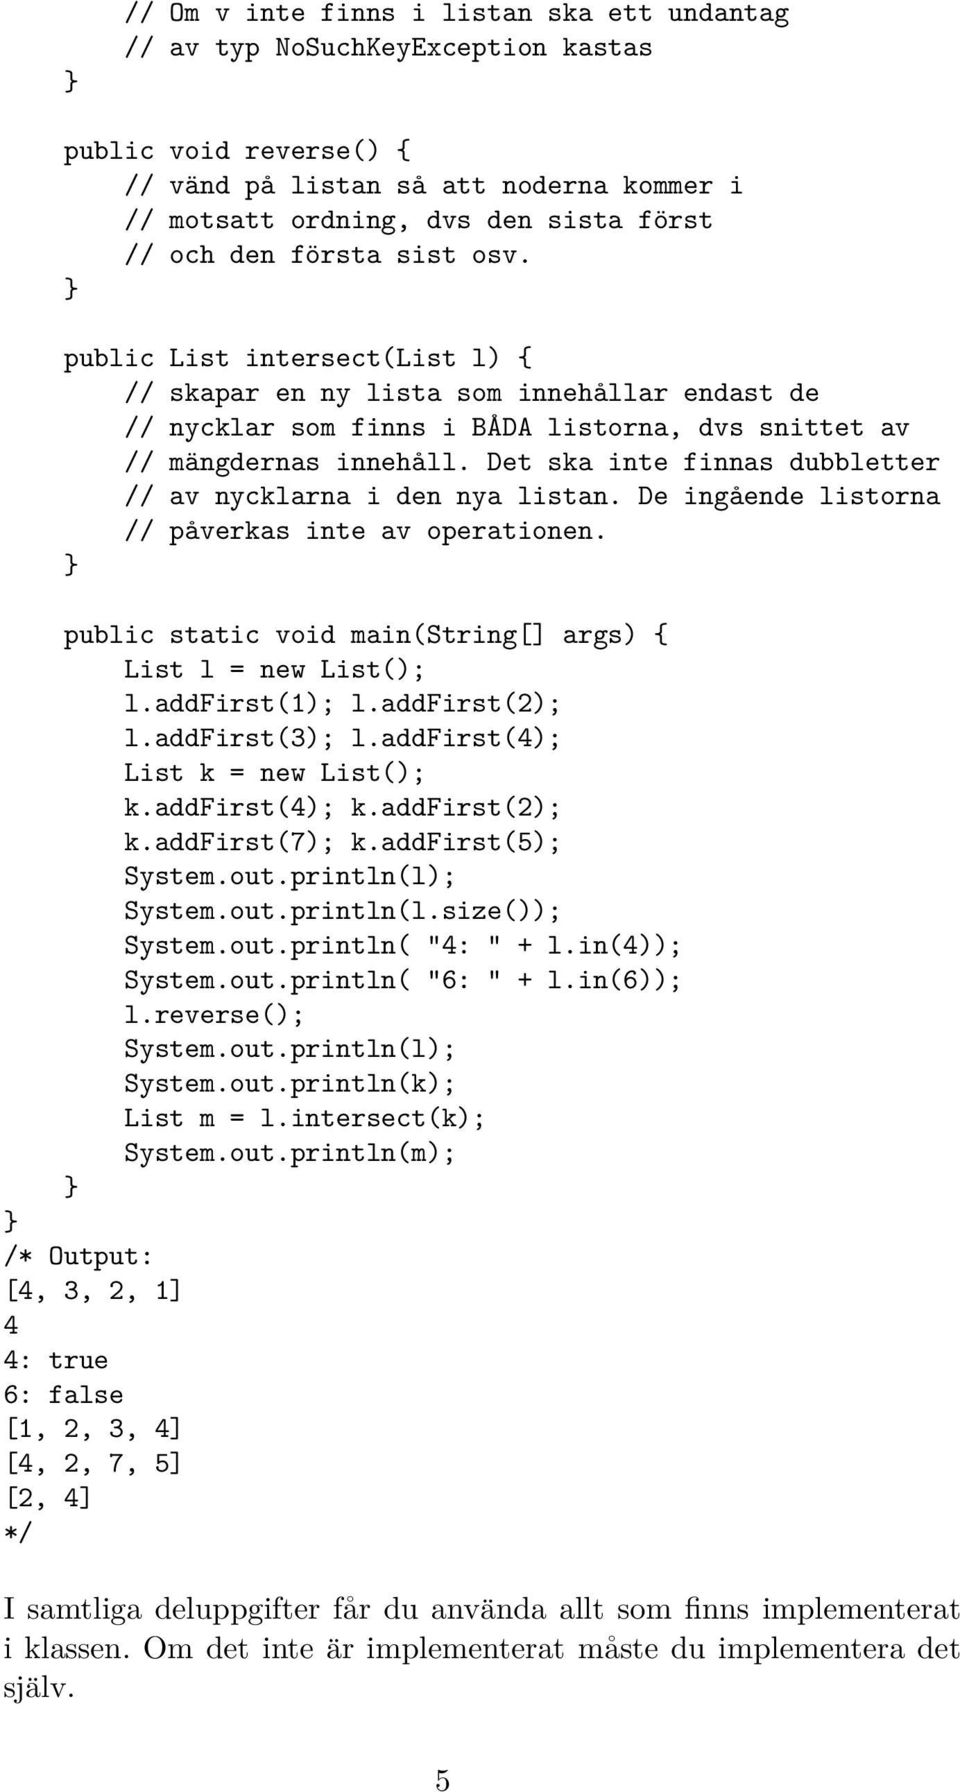 Det ska inte finnas dubbletter // av nycklarna i den nya listan. De ingående listorna // påverkas inte av operationen. public static void main(string[] args) { List l = new List(); l.addfirst(1); l.